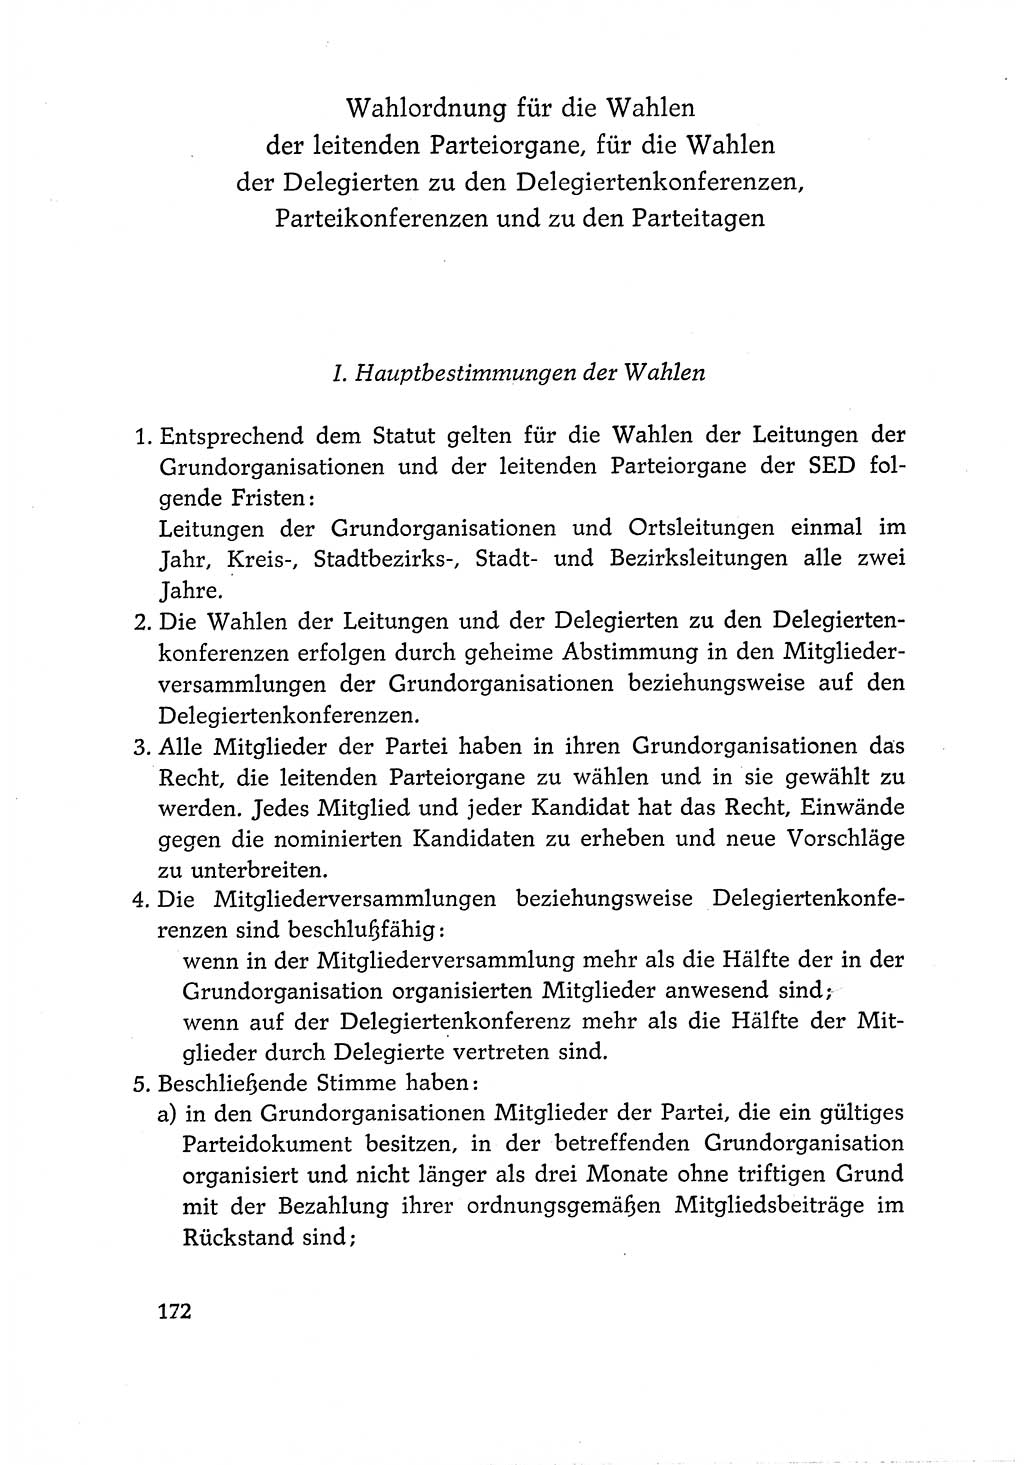 Dokumente der Sozialistischen Einheitspartei Deutschlands (SED) [Deutsche Demokratische Republik (DDR)] 1966-1967, Seite 172 (Dok. SED DDR 1966-1967, S. 172)